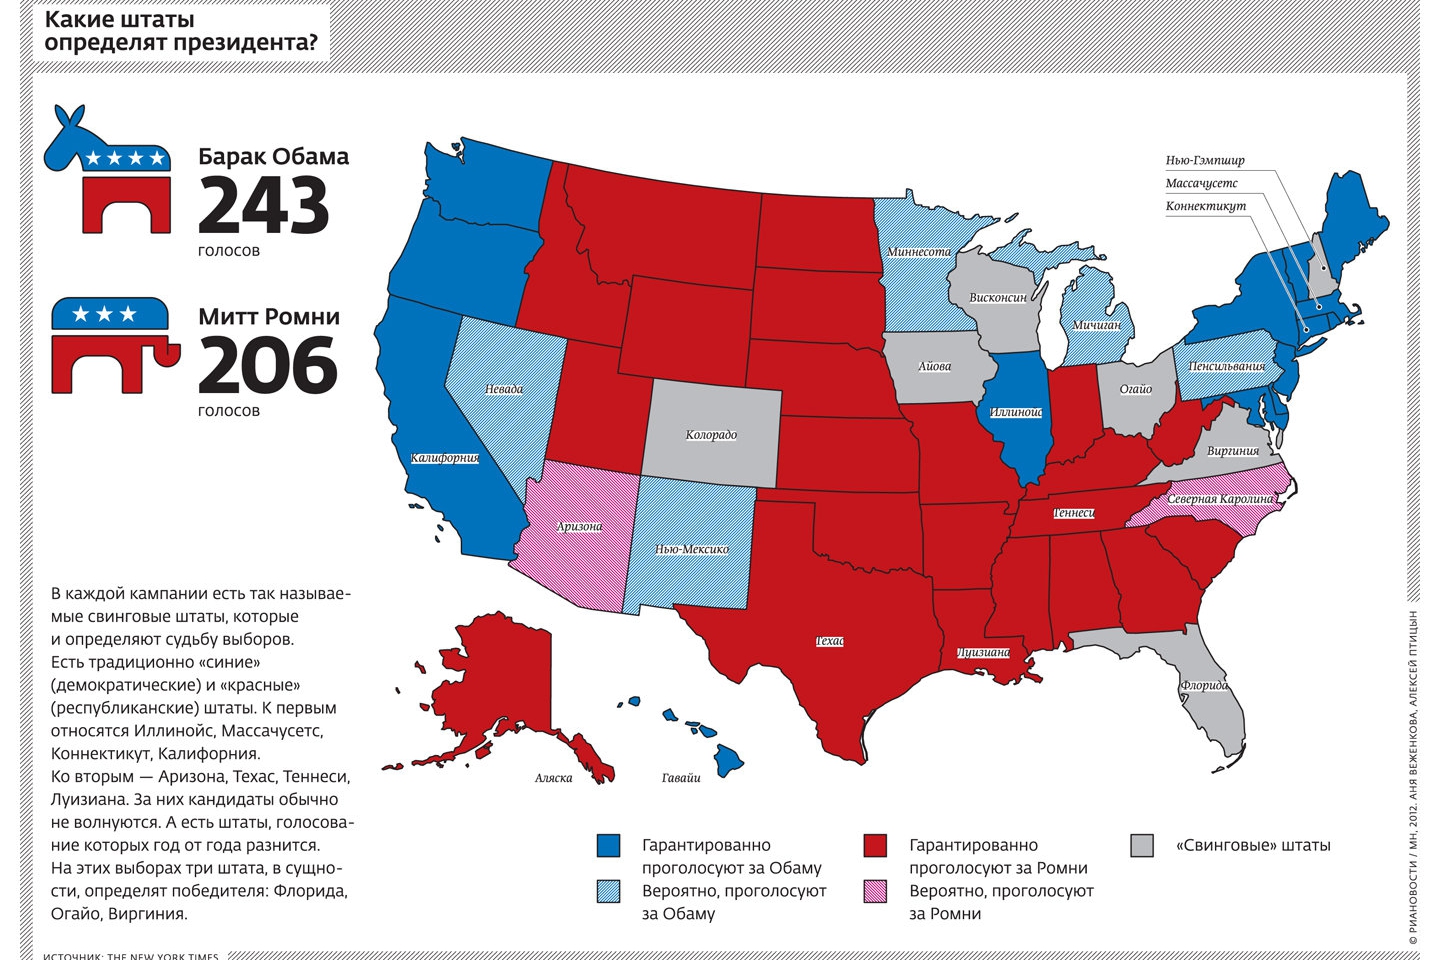 Республиканская демократия страны. Демократы и республиканцы в США по Штатам. Штаты США по партиям. Консервативные штаты США 2020. Карта Штатов США по партиям.